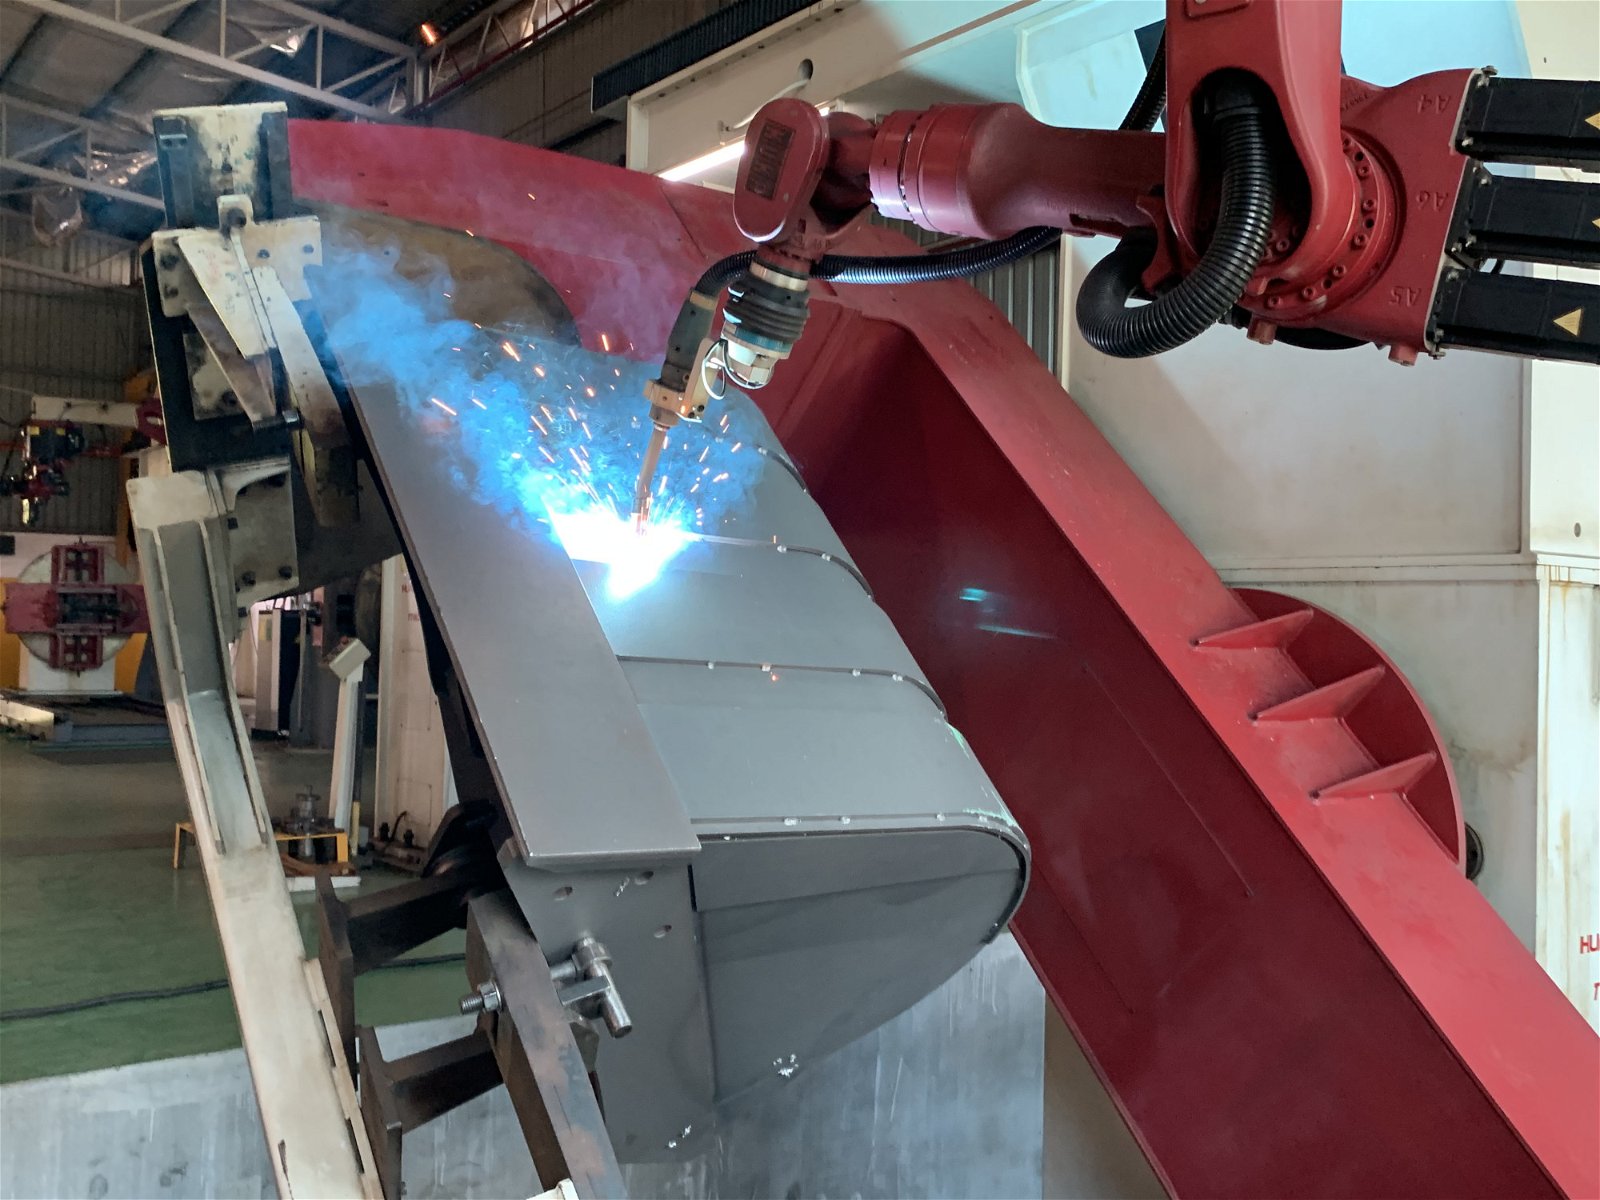 亚依淡厂房使用机器人自动化系统制造产品，图为采用机器人制造吊桥。